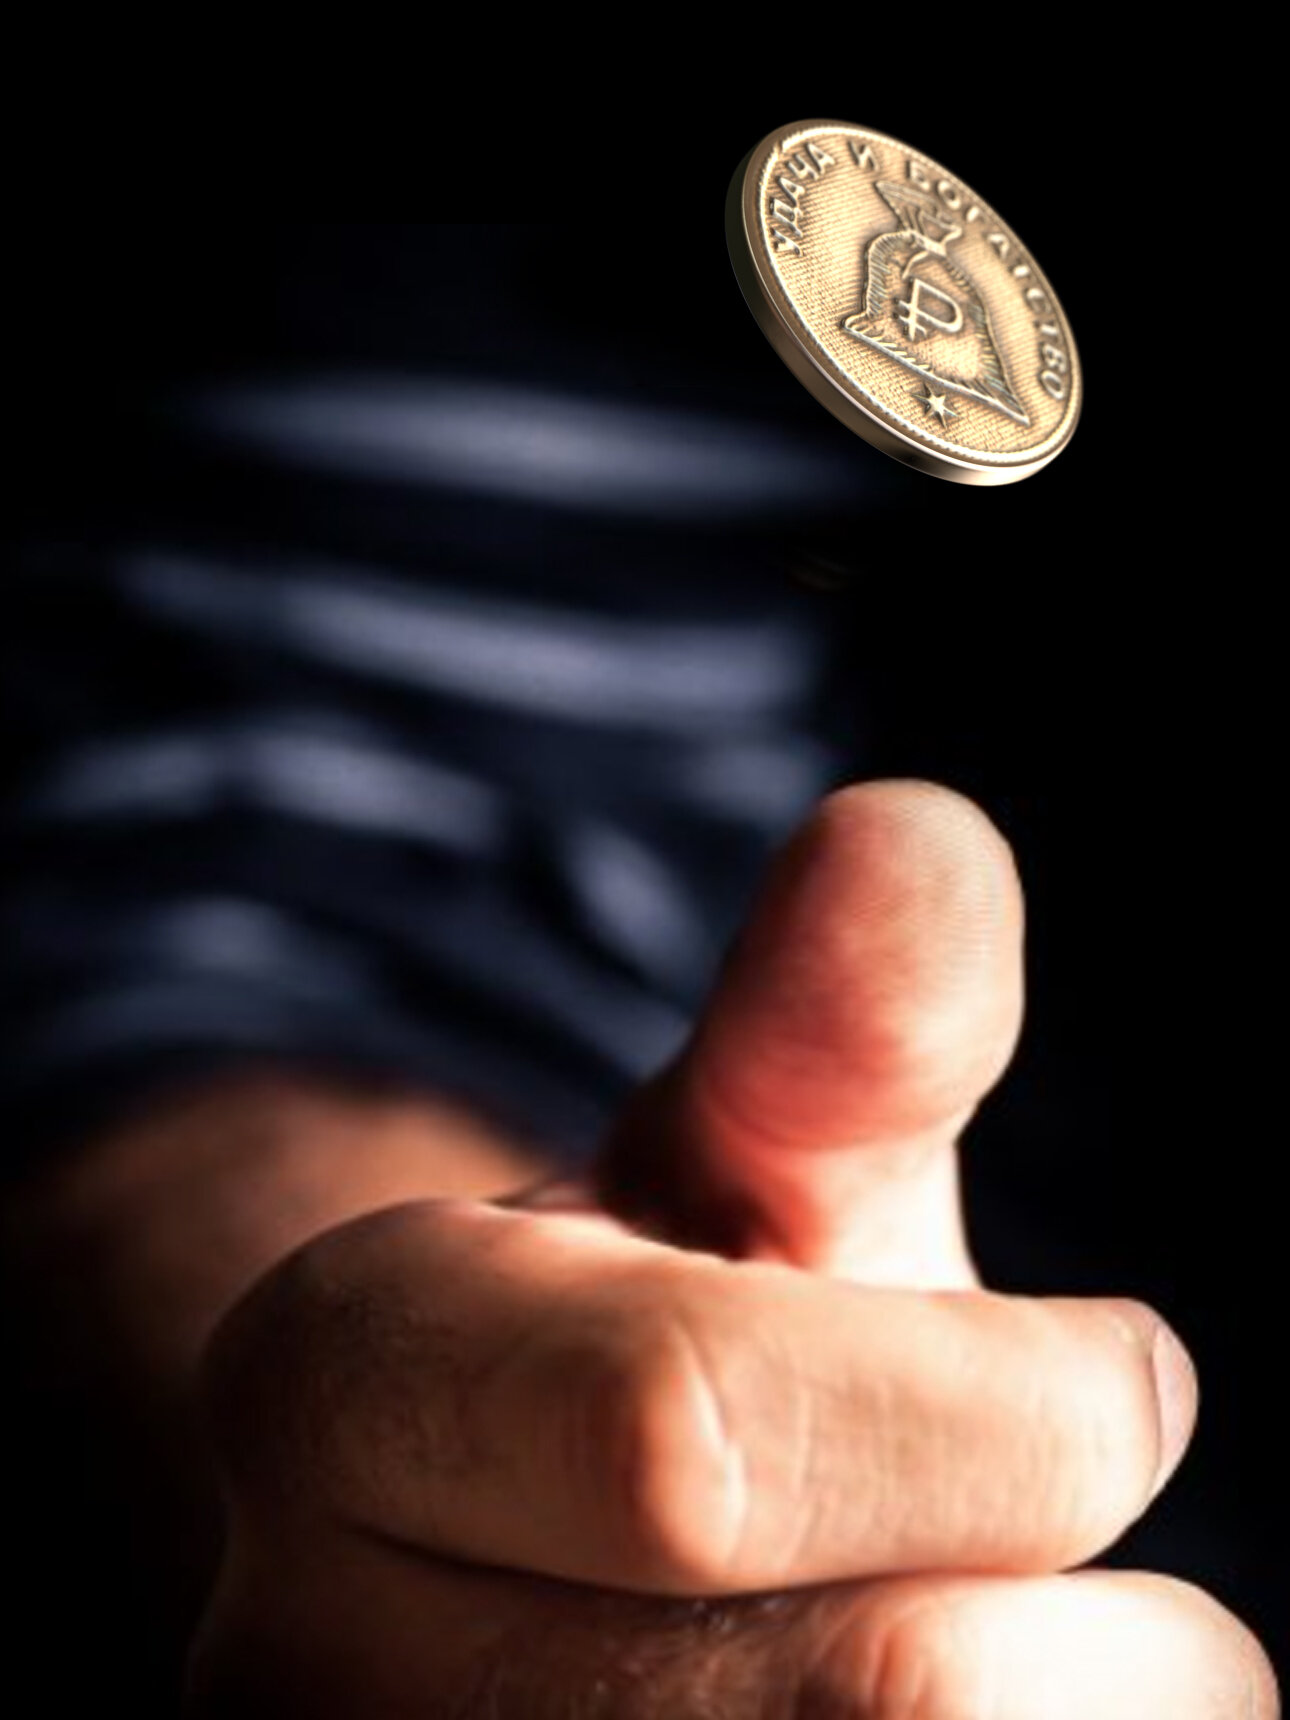 Именная оригинальна сувенирная монетка в подарок на богатство и удачу мужчине или мальчику - Олег - фотография № 6